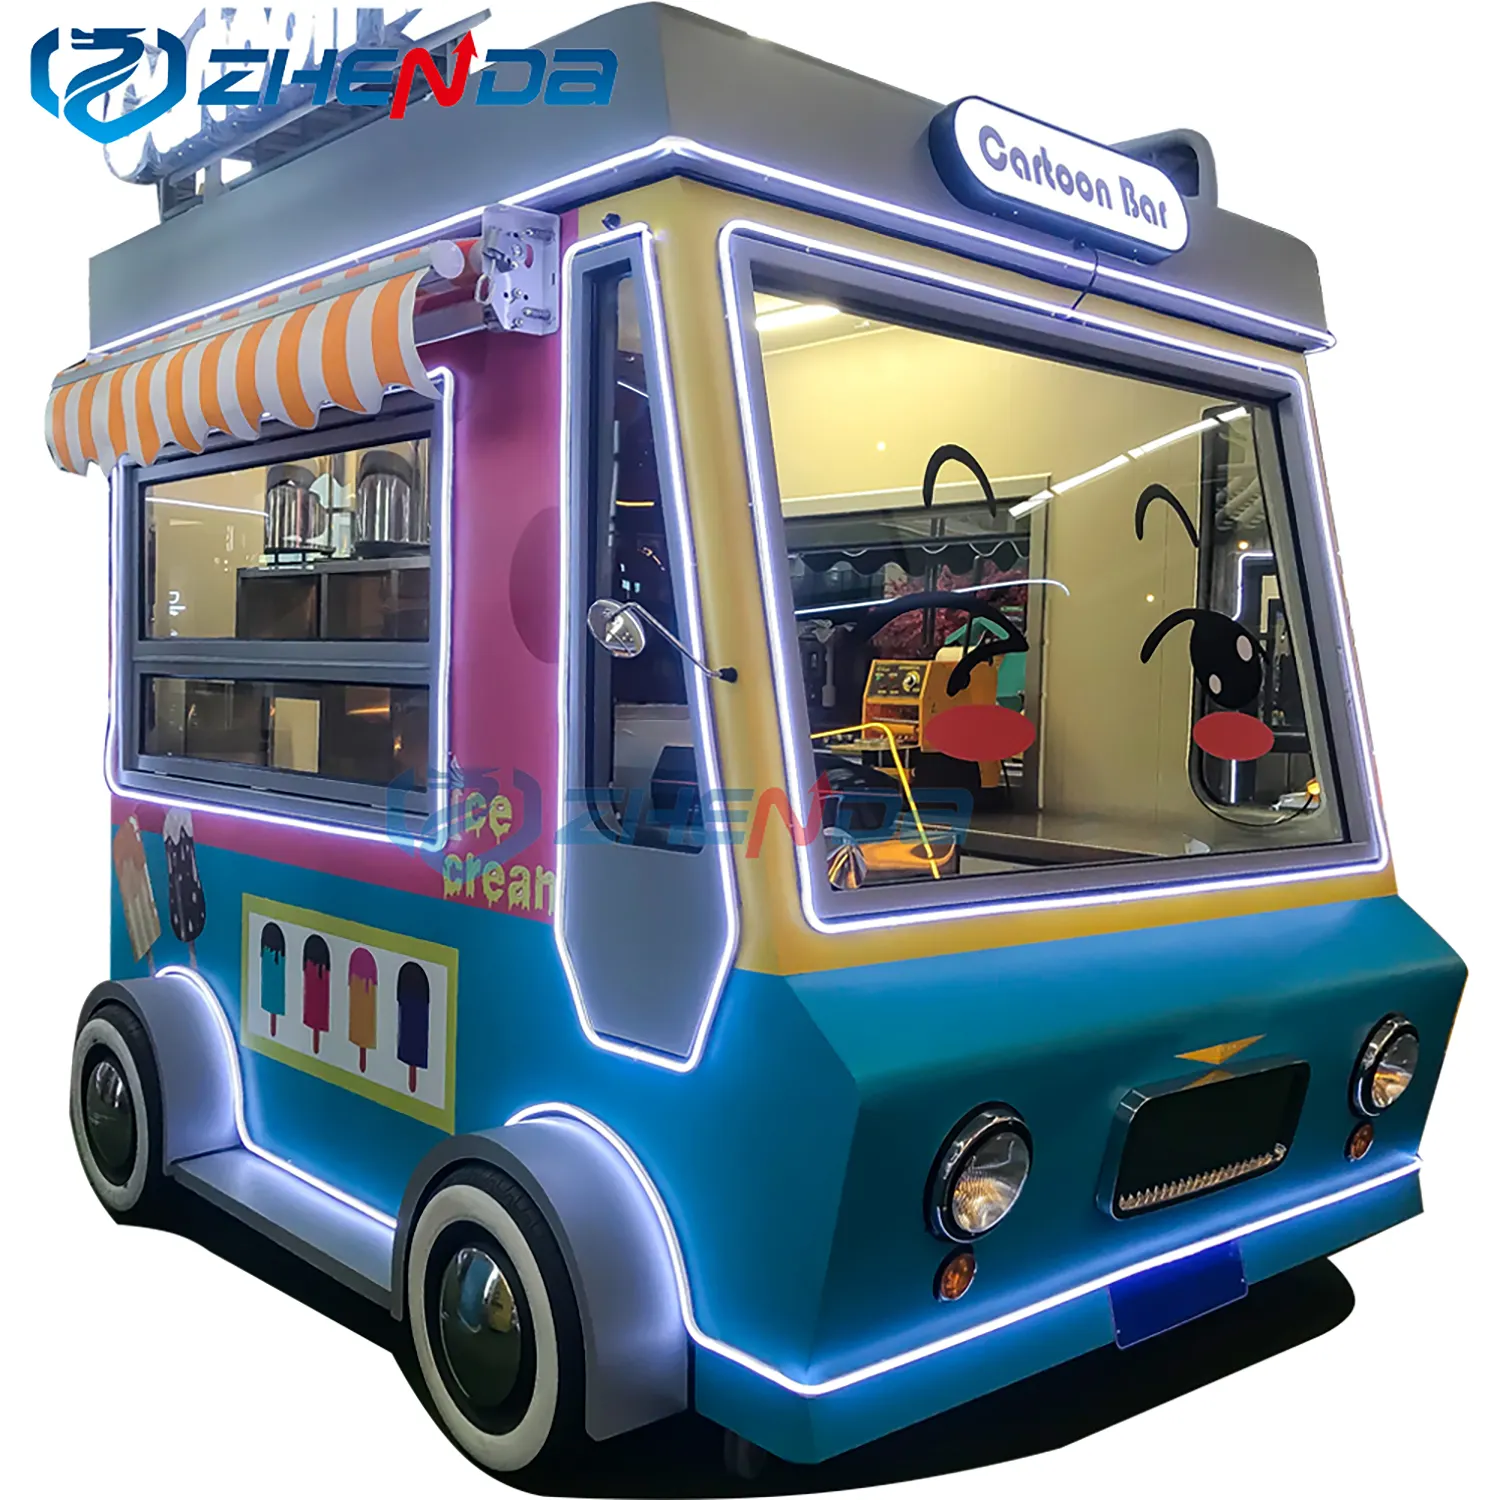 Internat ionaler zertifizierter elektrischer Imbiss wagen zum Verkauf Mode Straße mobile Küche Food Truck Custom Catering automatischer Kiosk